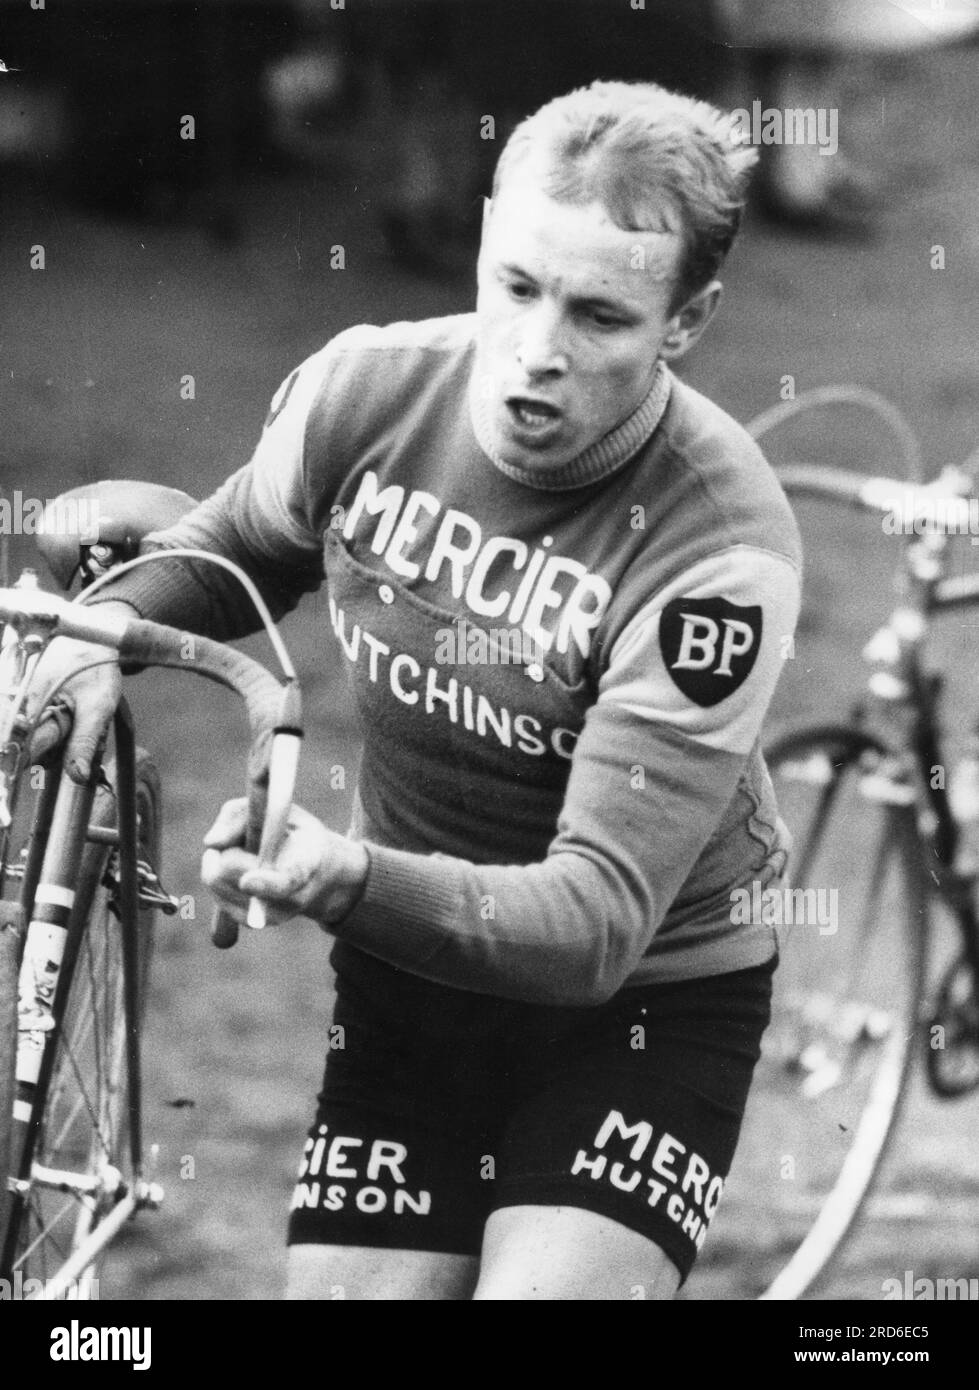 Wolfshohl, Rolf, * 27.12.1938, athlète allemand (coureur cycliste), lors de la course de cross-country, 1966, INFORMATIONS-AUTORISATION-DROITS-SUPPLÉMENTAIRES-NON-DISPONIBLES Banque D'Images